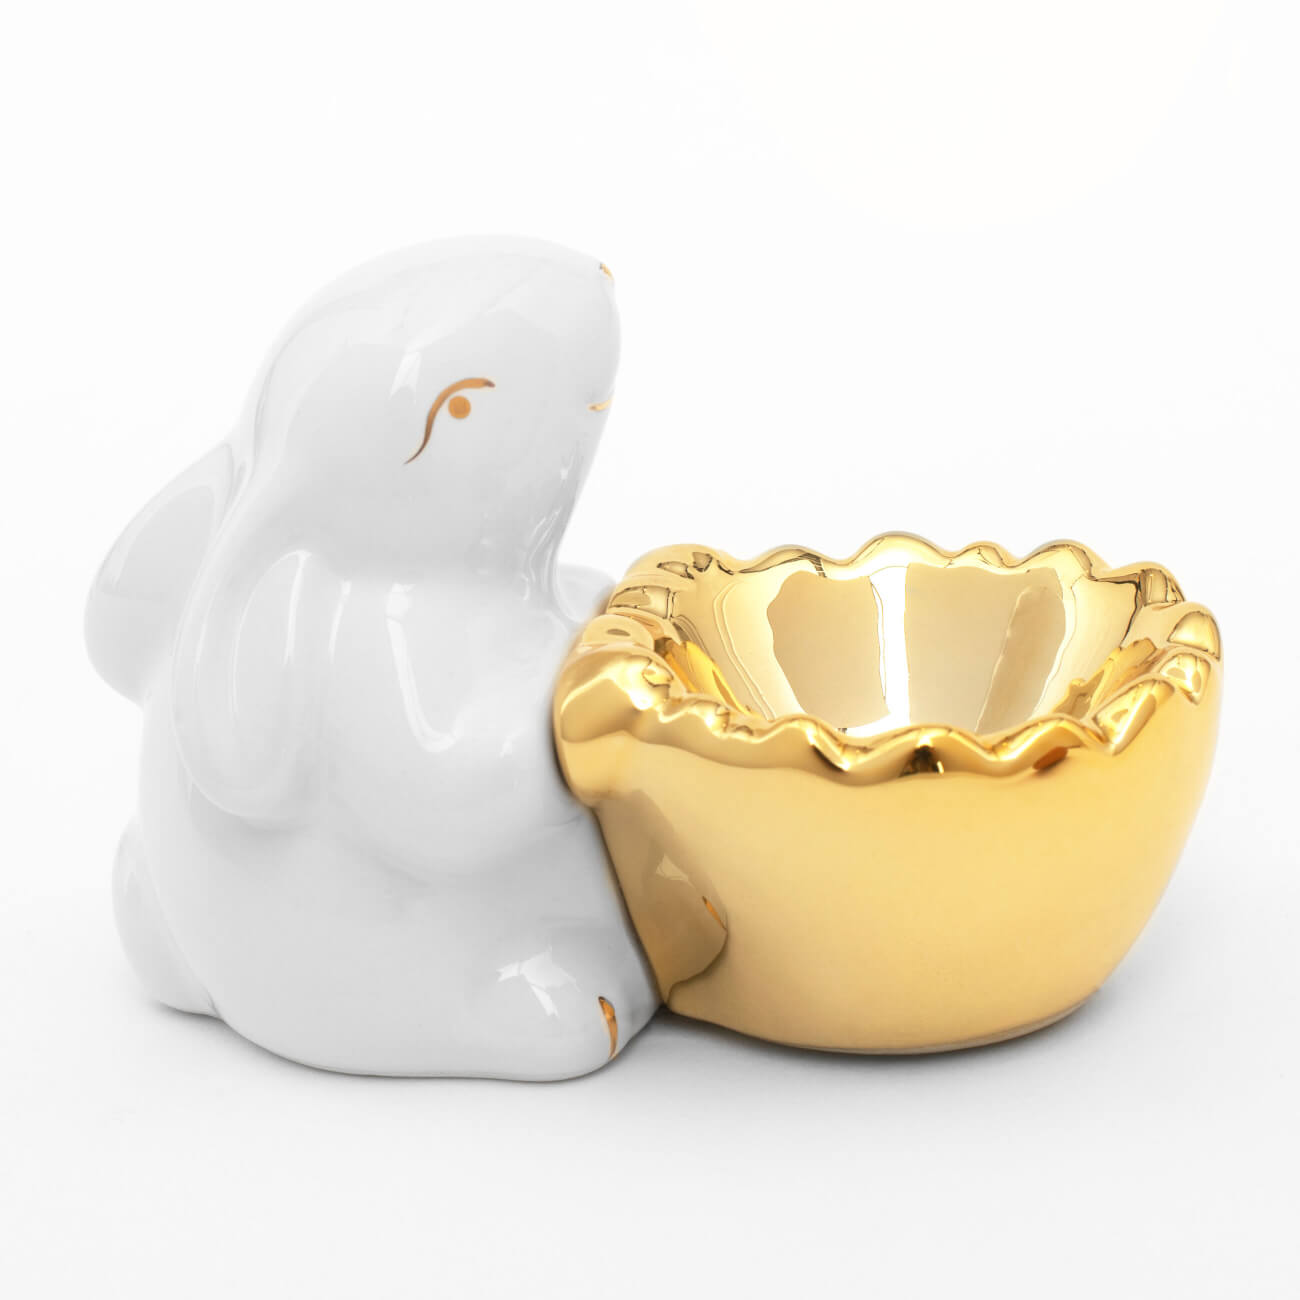 Подставка для яйца, 11 см, керамика, бело-золотистая, Кролик со скорлупой, Easter gold